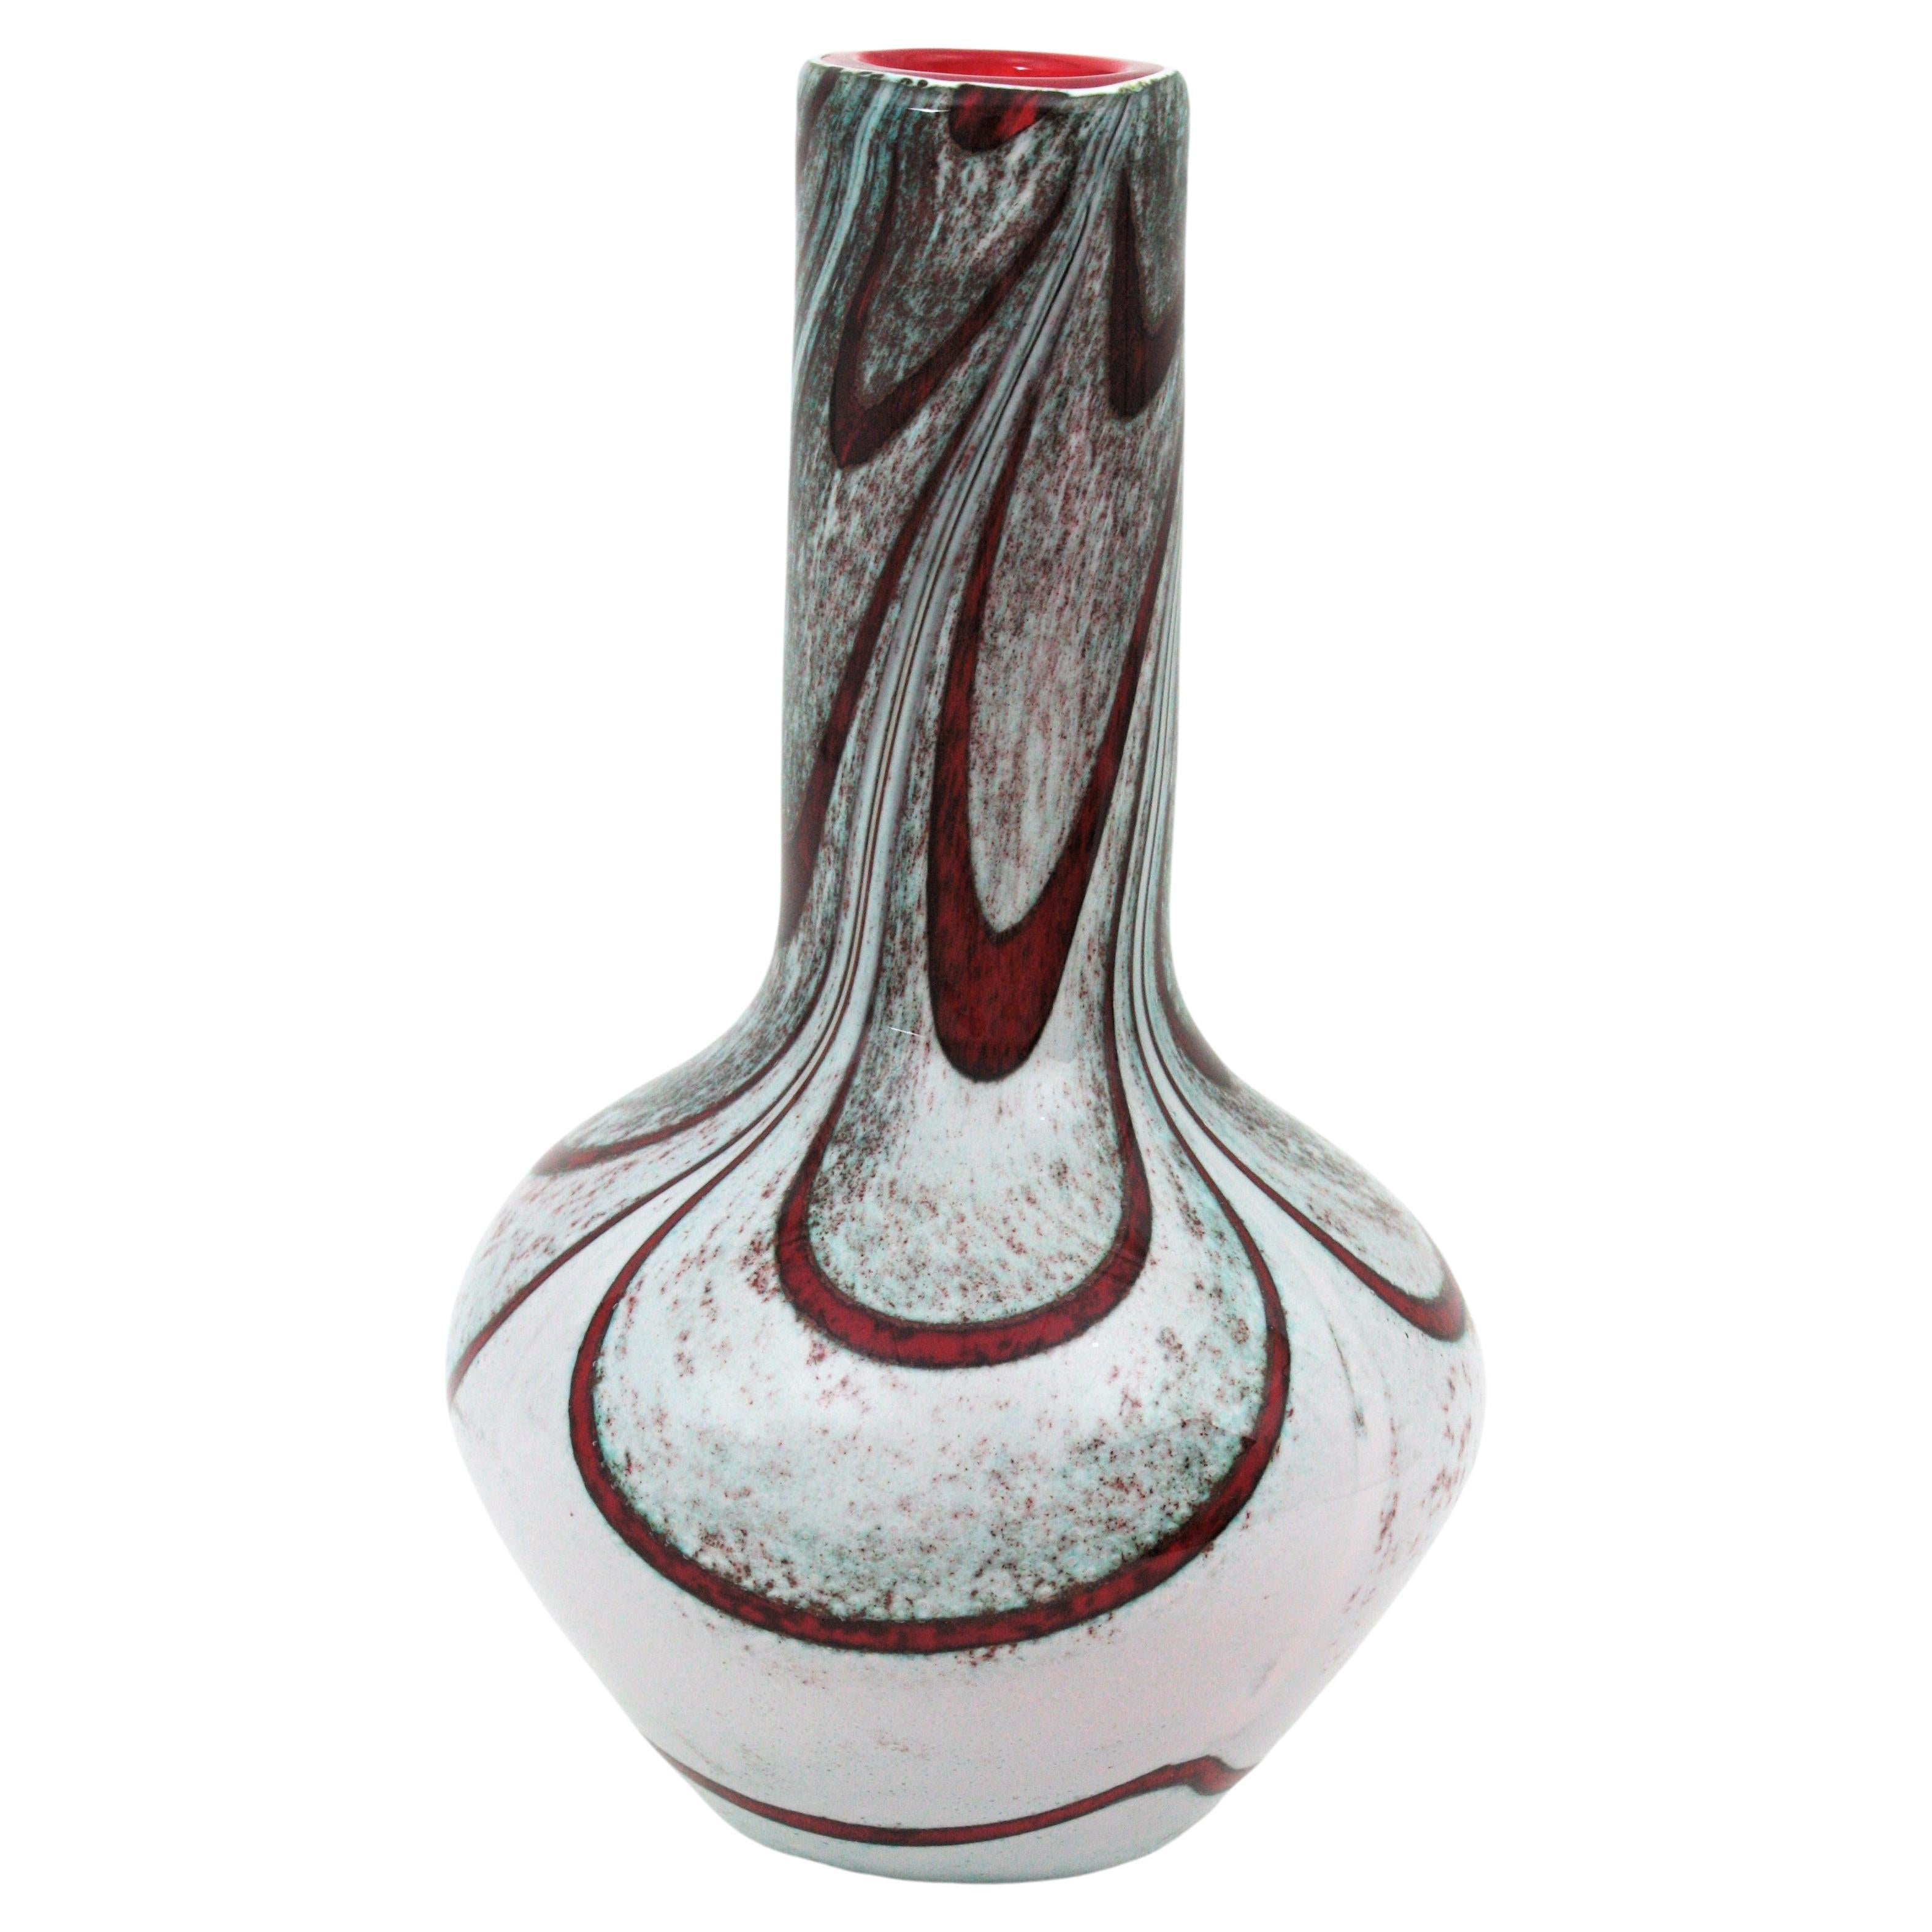 Magnifique vase en verre Opaline marbré en verre blanc, rouge, gris et bleu. Attribué à Carlo Moretti et fabriqué par Opaline Florence. Italie, années 1960.
Un design élégant. Verre blanc opalin sur la partie extérieure avec des bandes en verre